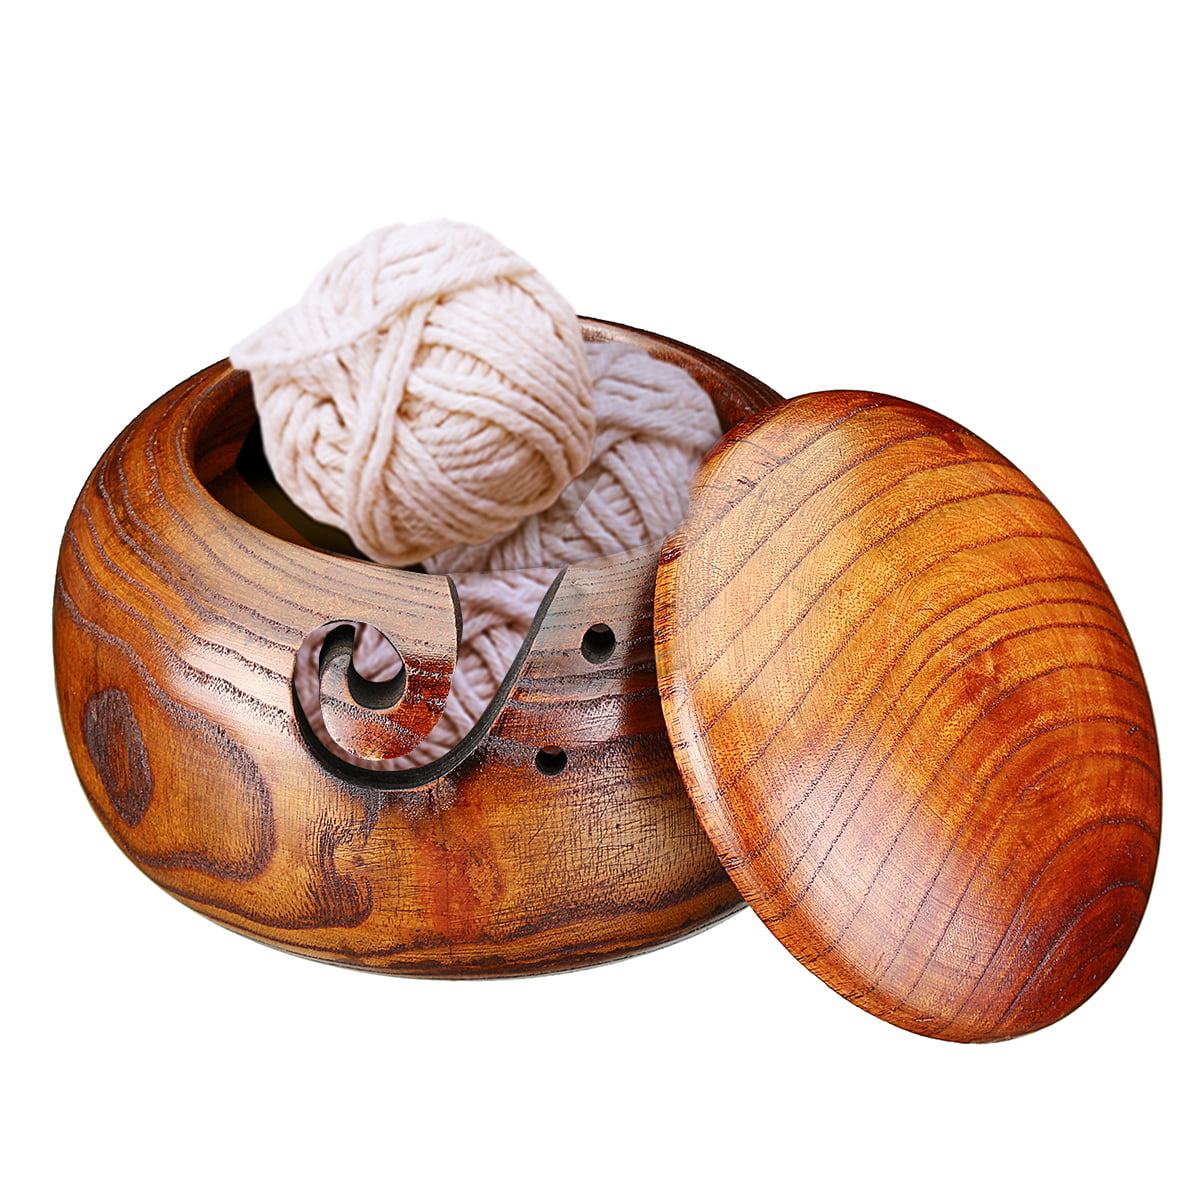 arn Bowl Holder Storage Bowl Natural Wood for Knitting & Crochet Yarn Holder